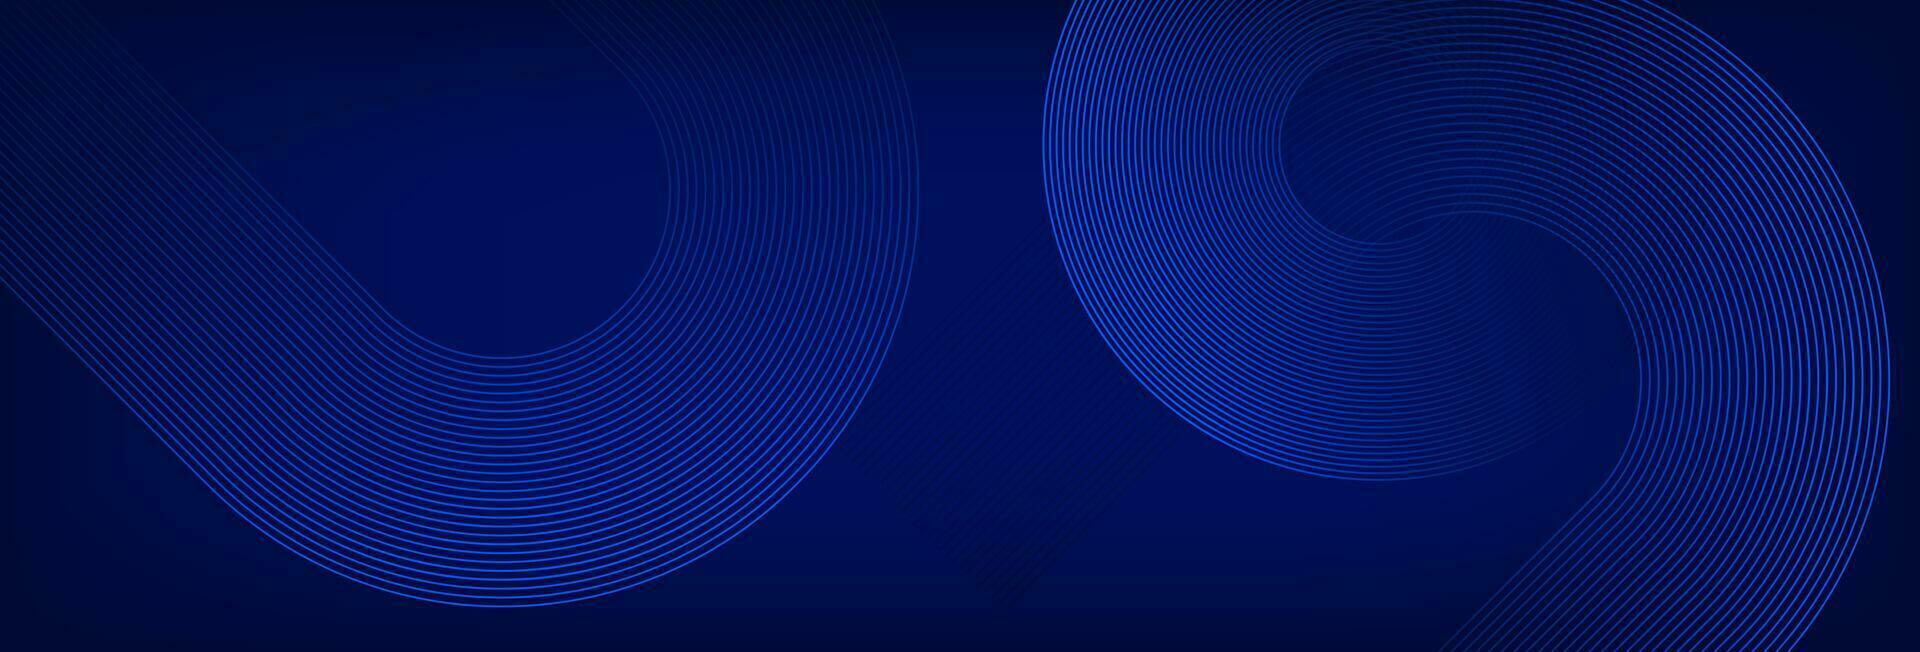 abstrakt Blau Hintergrund mit glühend Kreis Linien. modern leuchtenden Linie Kunst Design. futuristisch Konzept. Banner, Poster, Abdeckungen, Tapeten. Vektor Illustration